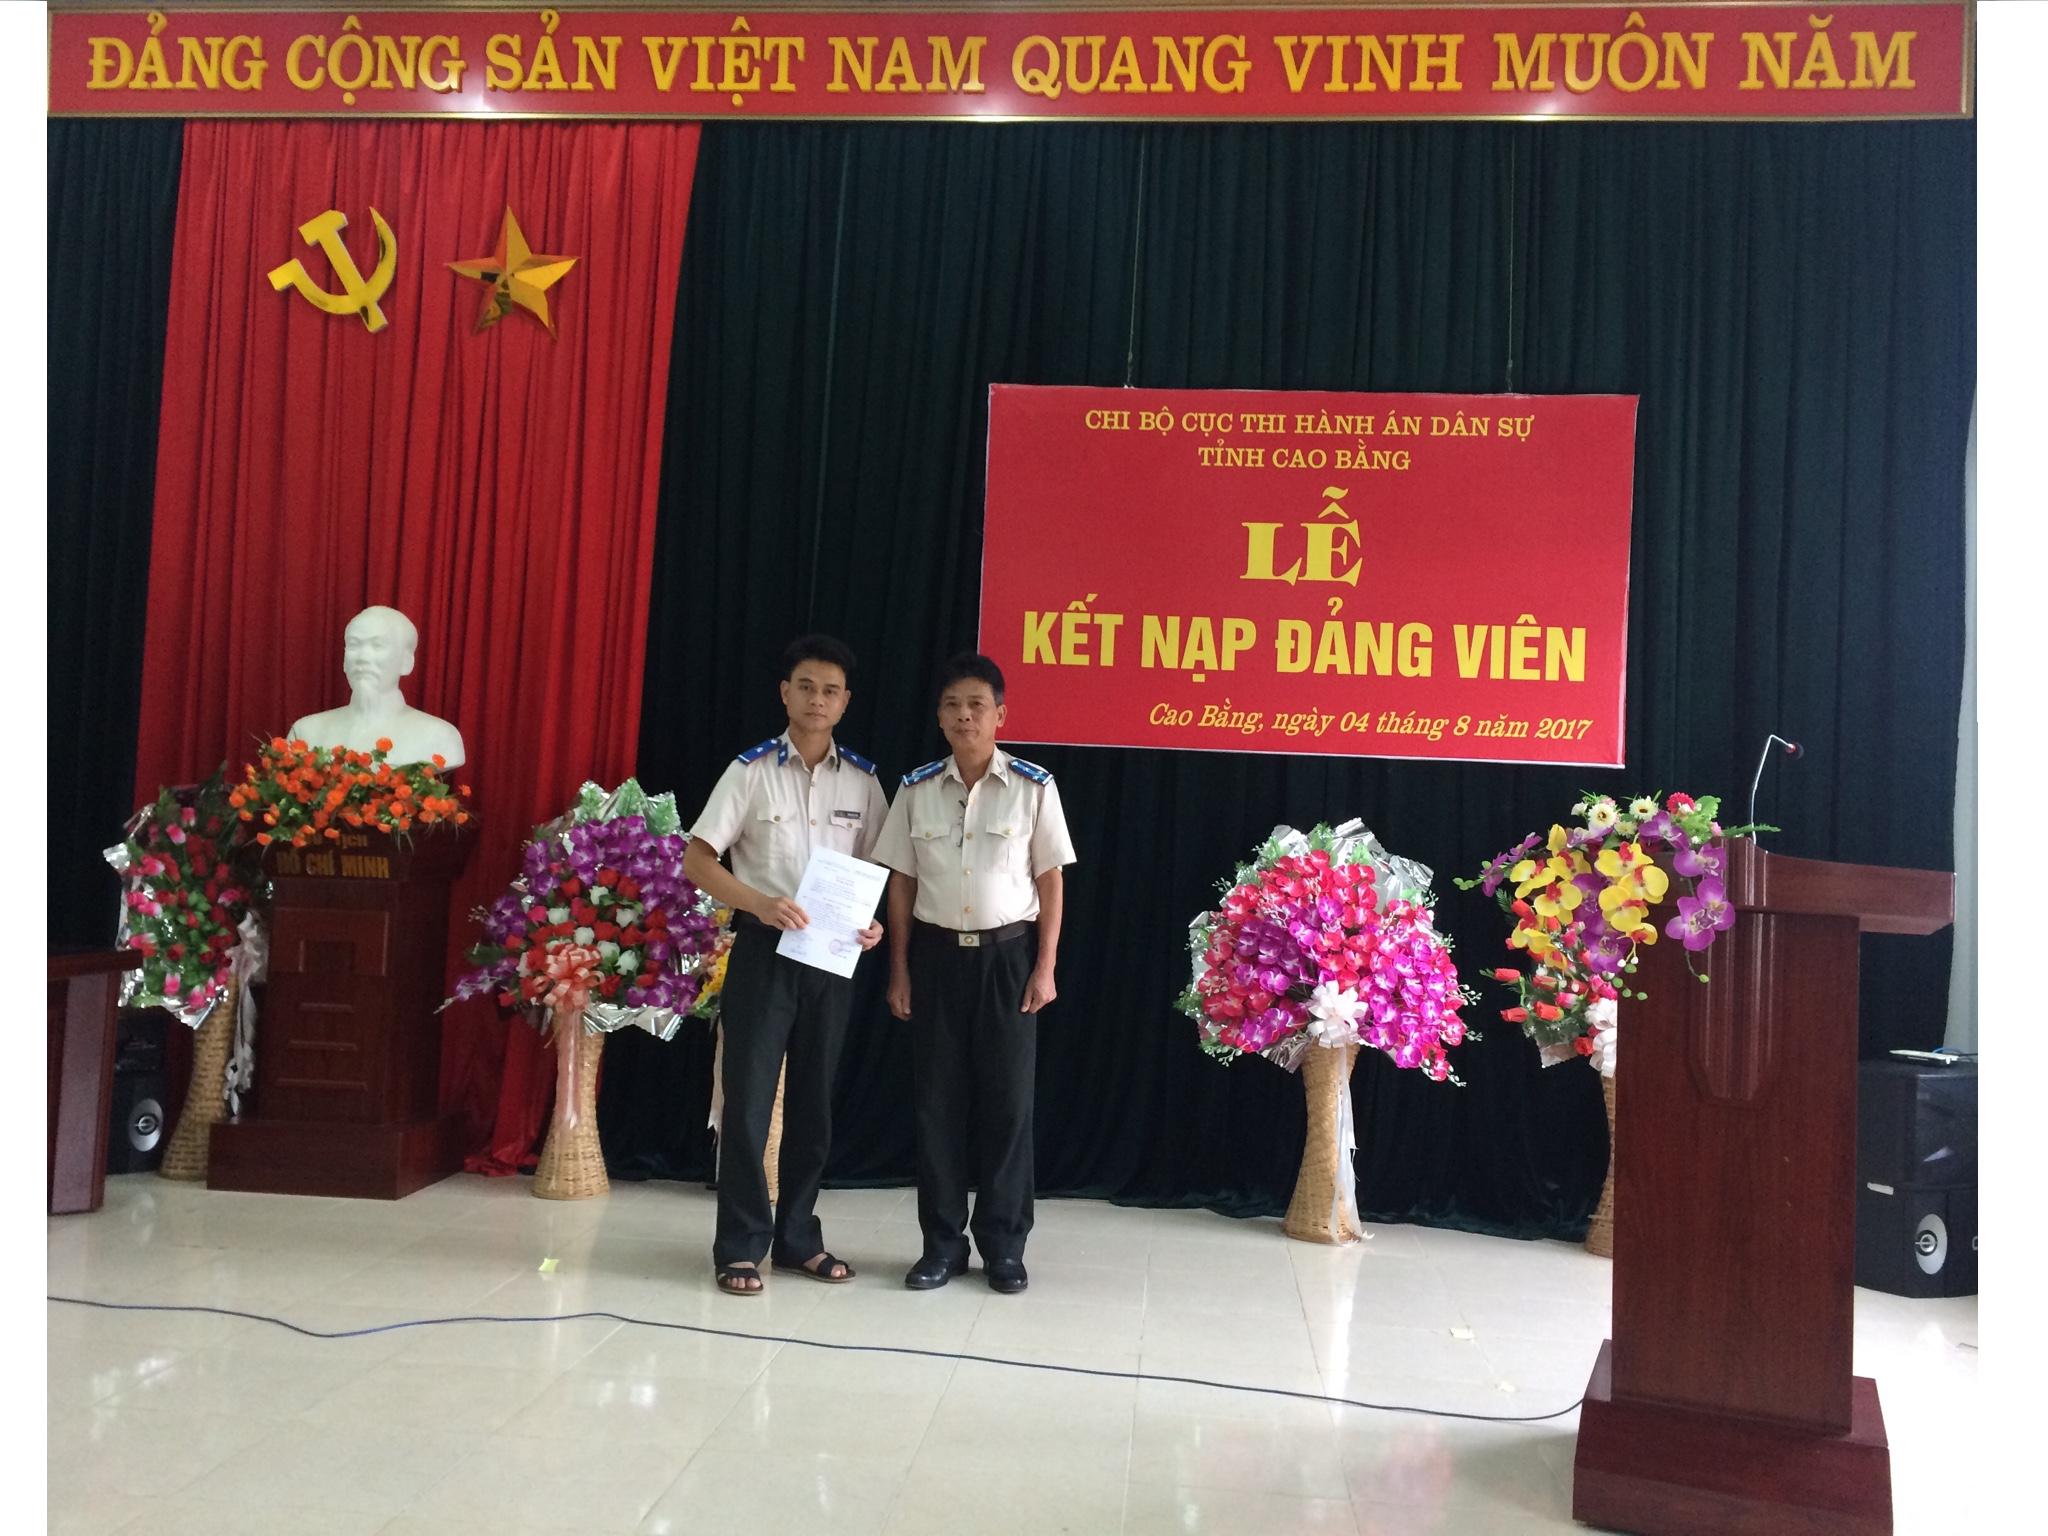 Chi bộ Cục Thi hành án dân sự tỉnh Cao Bằng tổ chức Lễ kết nạp đảng  viên